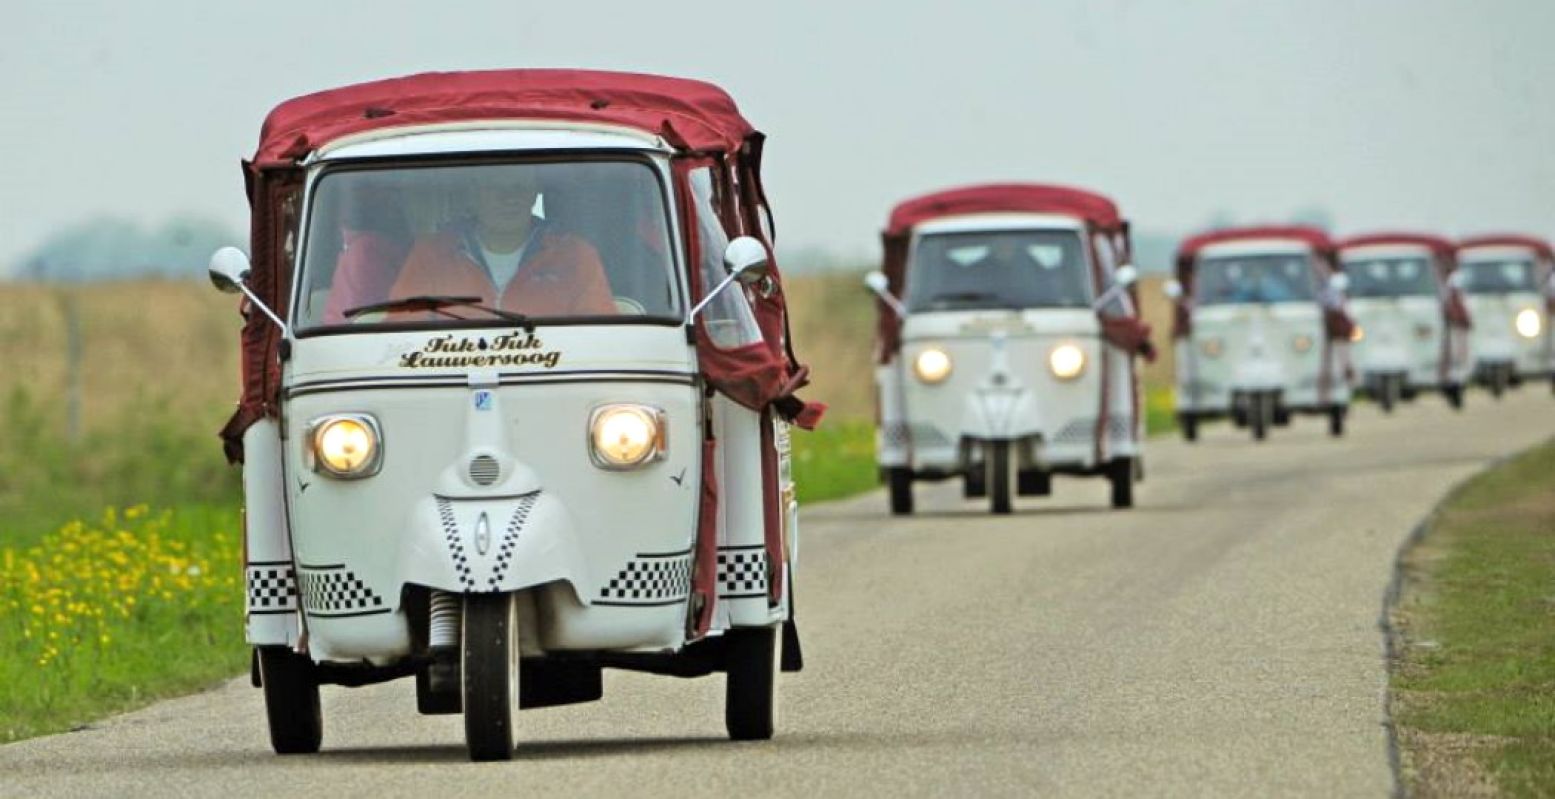 Populair in 2020: een ritje met een tuktuk! Foto: TukTuk Lauwersoog